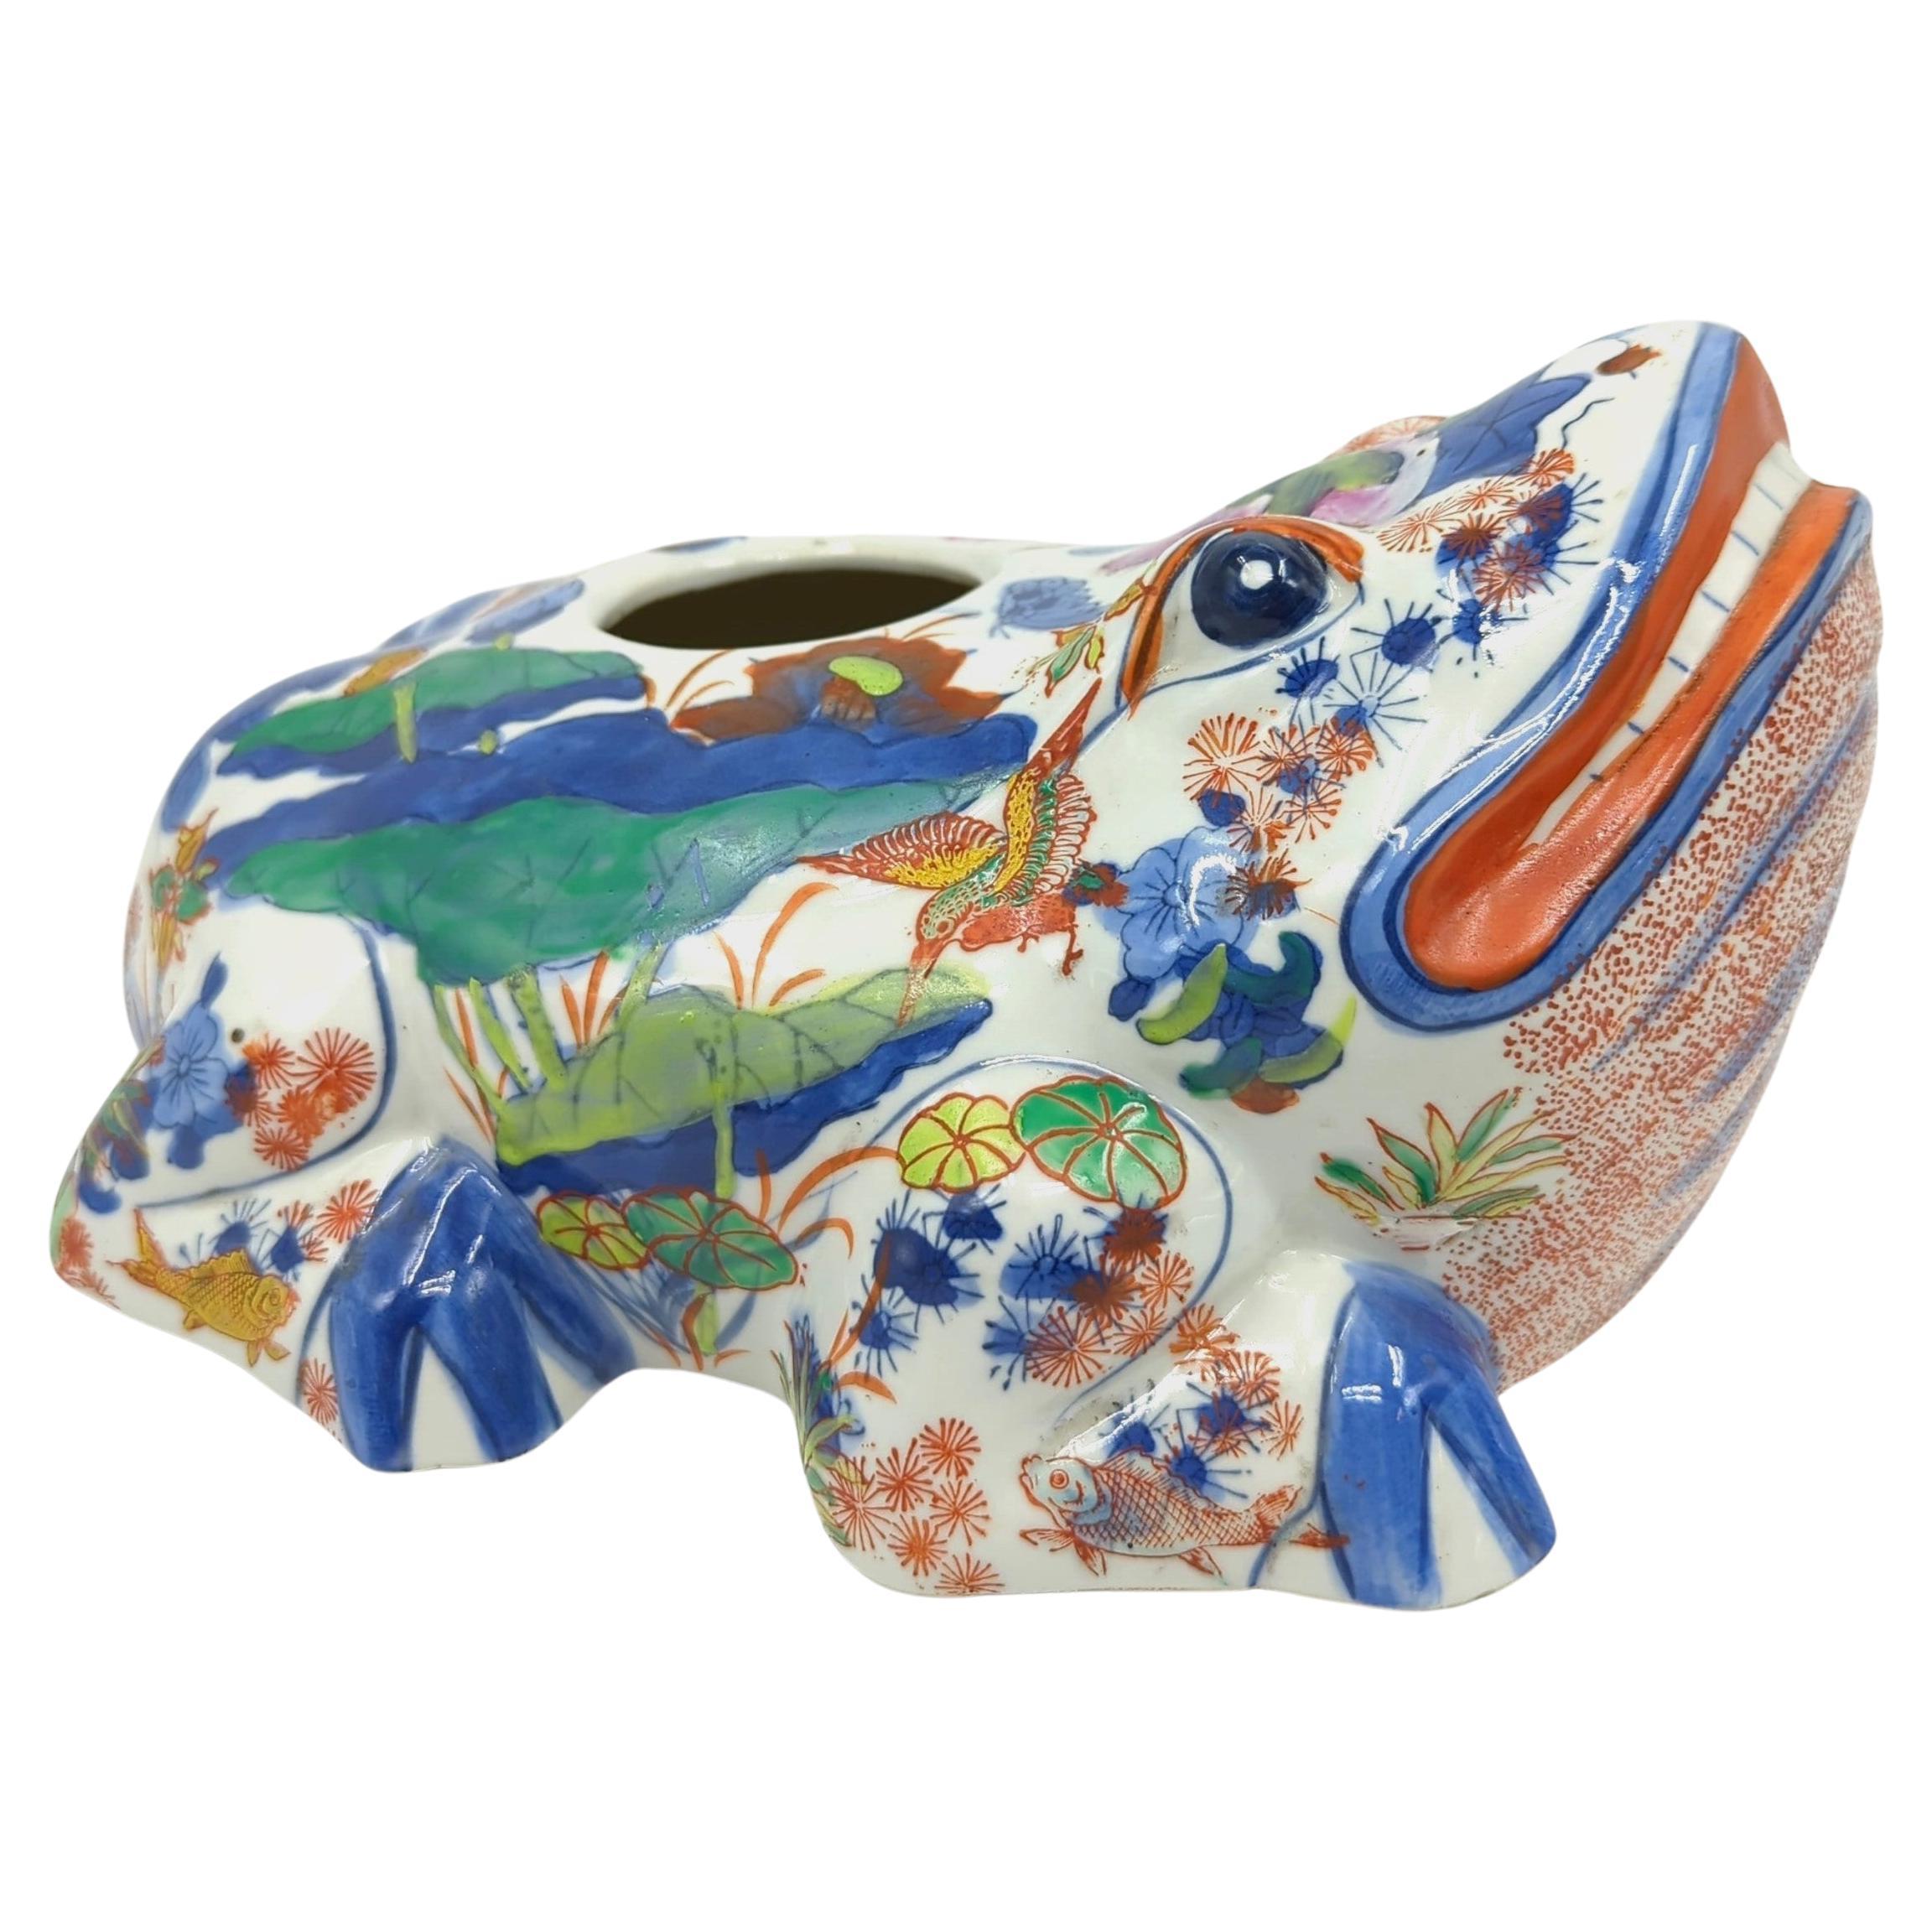 Nous avons le plaisir de présenter ce grand vase grenouille à décor de doucai polychrome, une pièce remarquable de la fin de la dynastie Qing. Le vase est orné de couleurs de famille rose et de bleu sous glaçure sur fond blanc, techniques qui